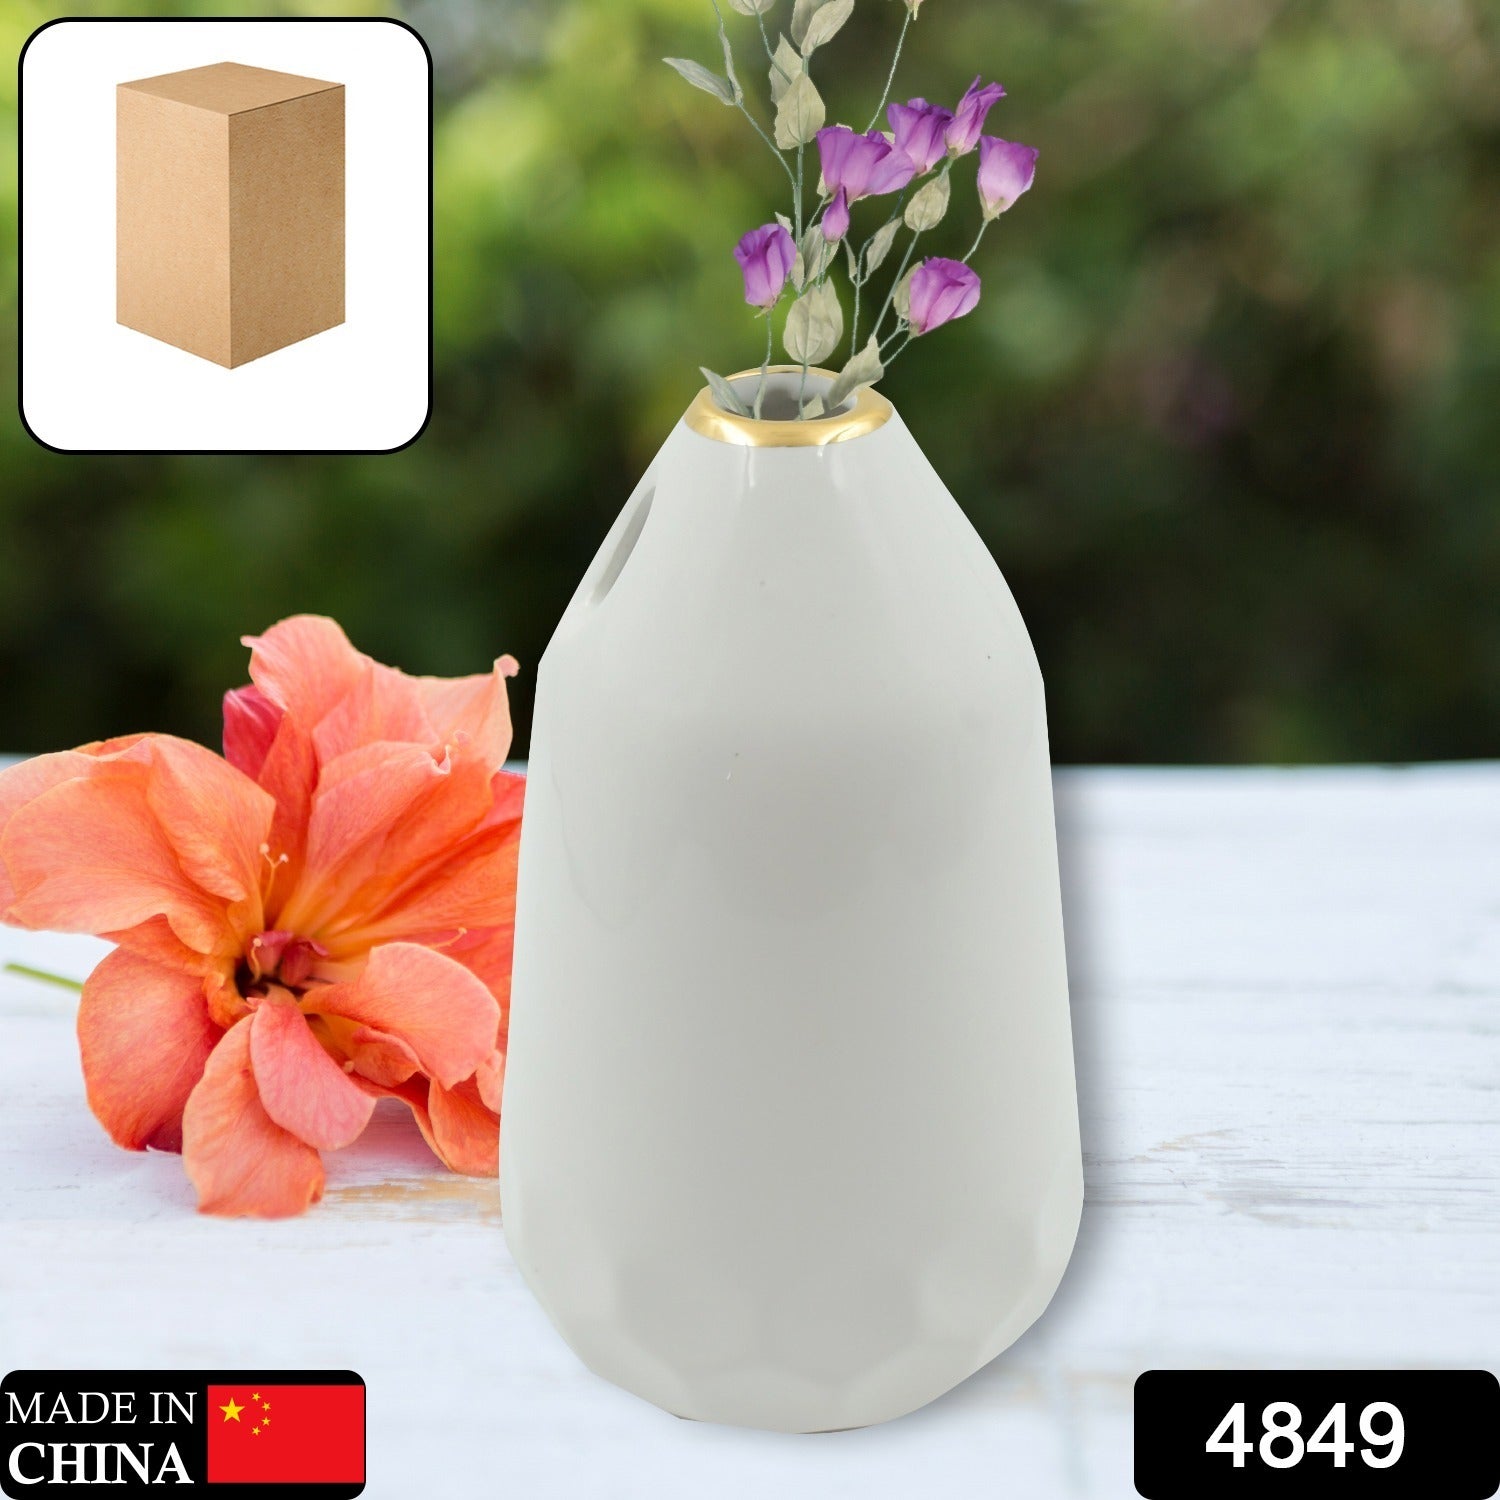 4849 Ceramic Vase / Pot, Flower Vase Flower Arrangement Container Centerpiece Plant Vase Rustic Vase Porch Vase Decor for Shelves Decorative Vase (Without Flower / 1 pc)